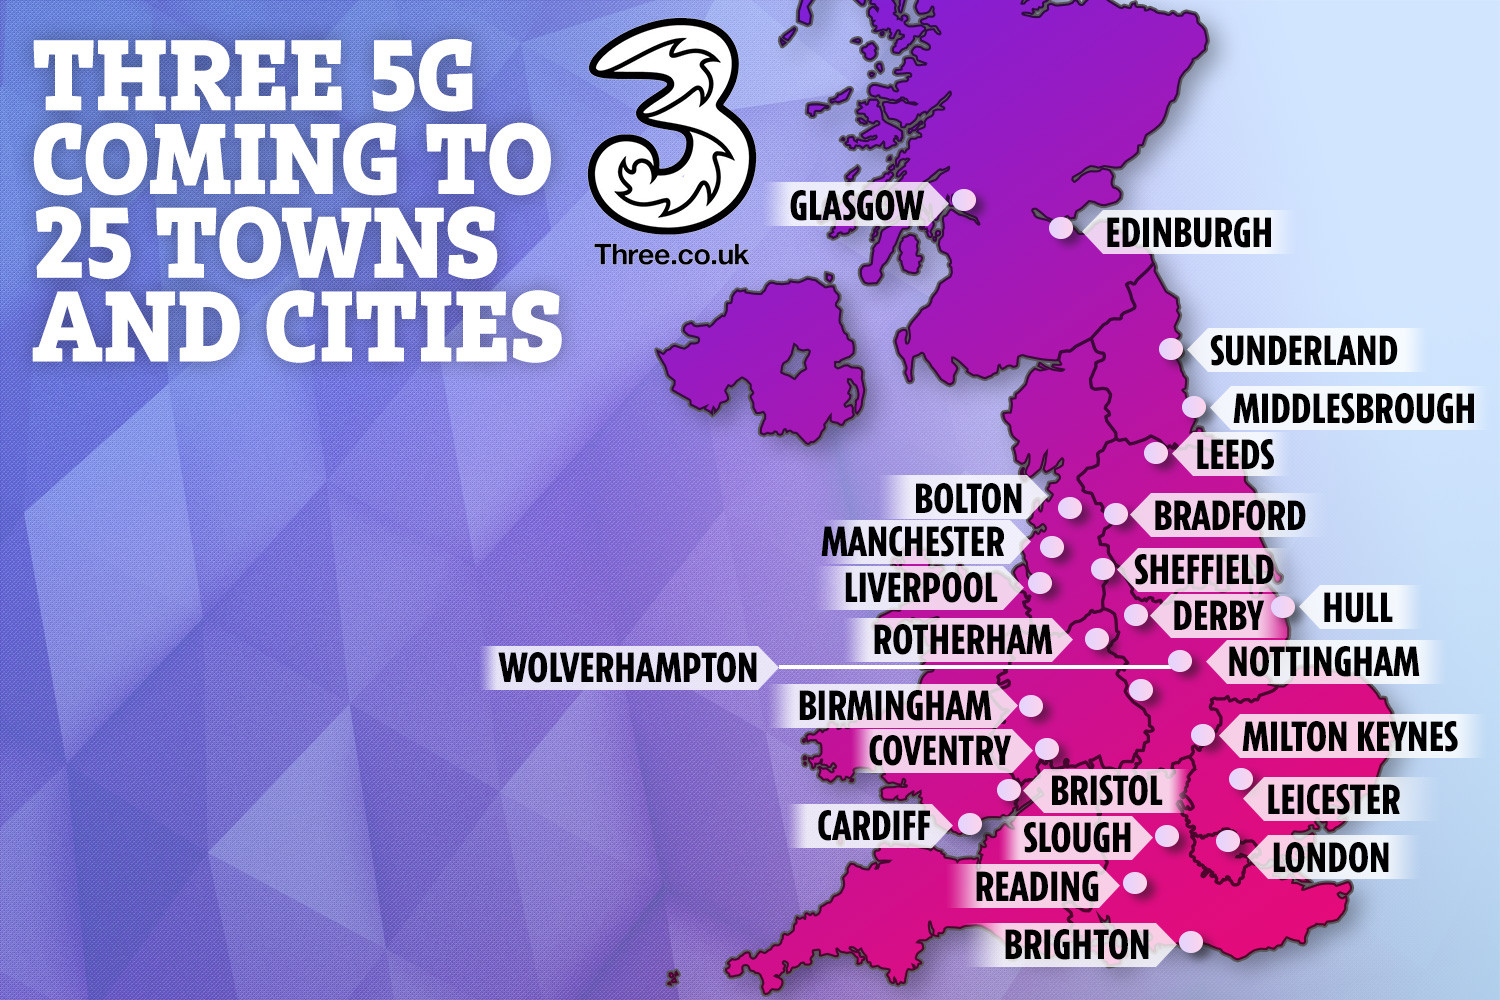         До 25 городов Великобритании получат доступ к сети 5G Three к концу 2019 года.